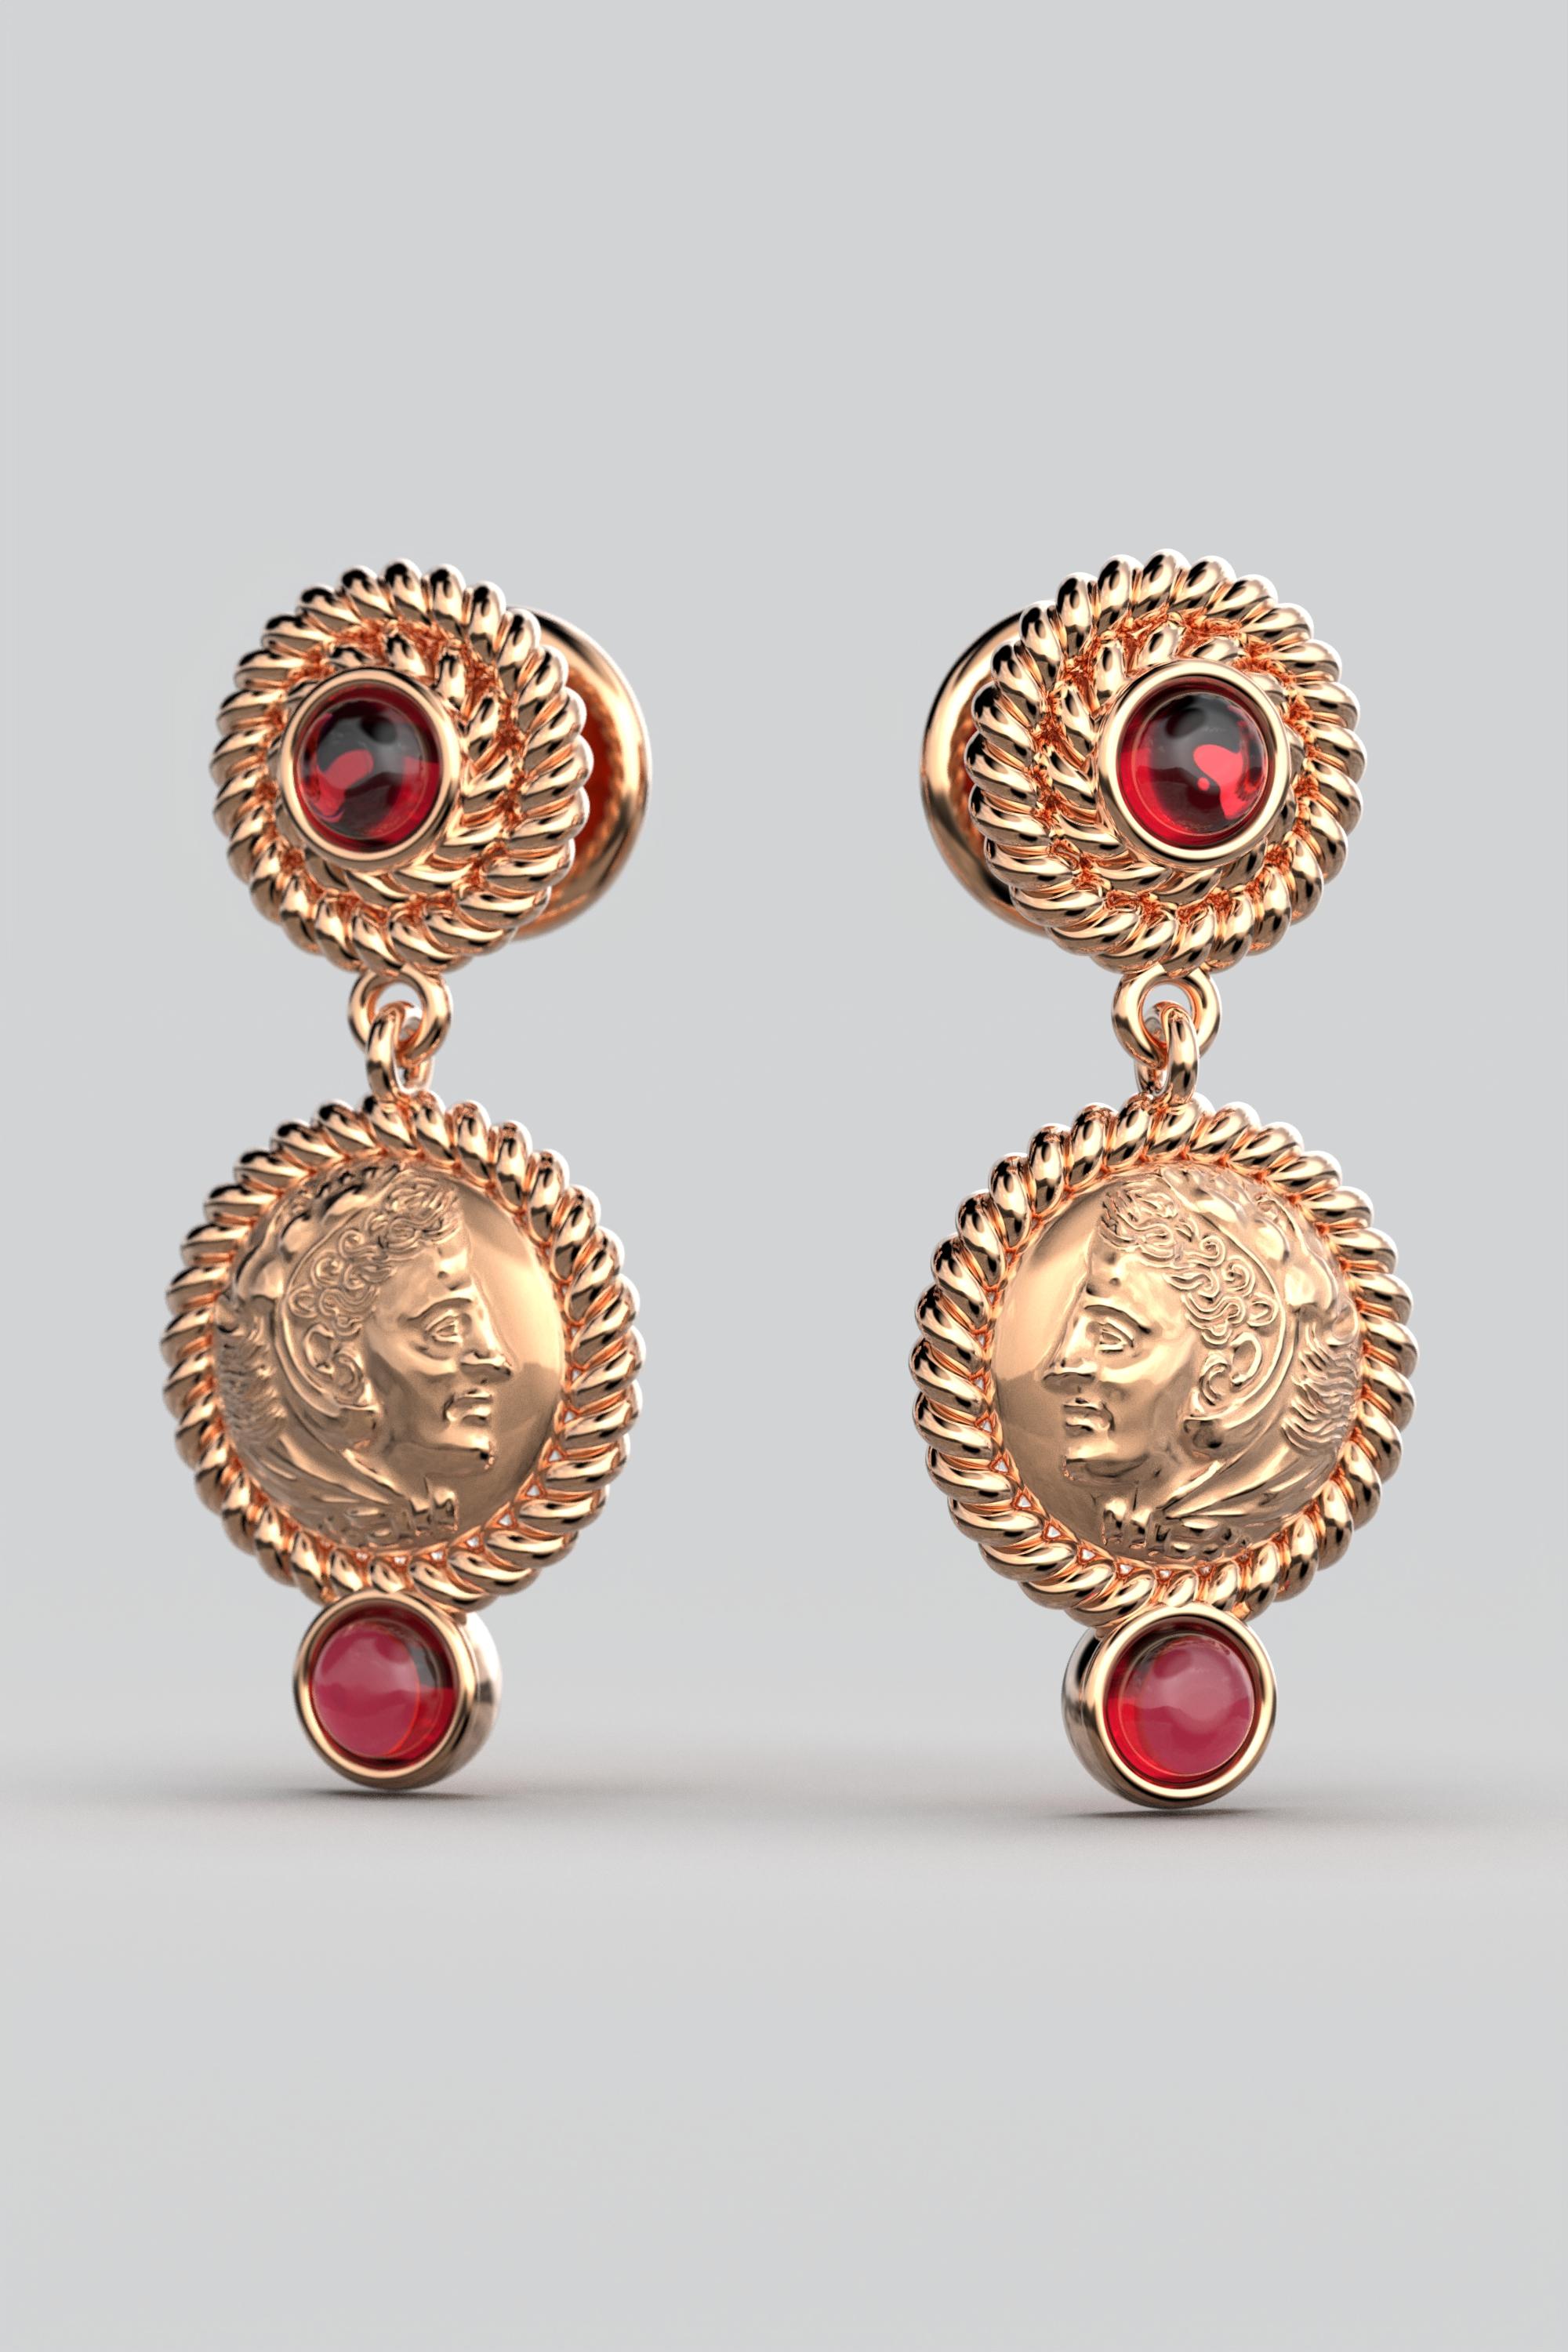 Women's Italian Jewelry  14k Gold Dangle Earrings With Garnets  Ancient Greek Style For Sale